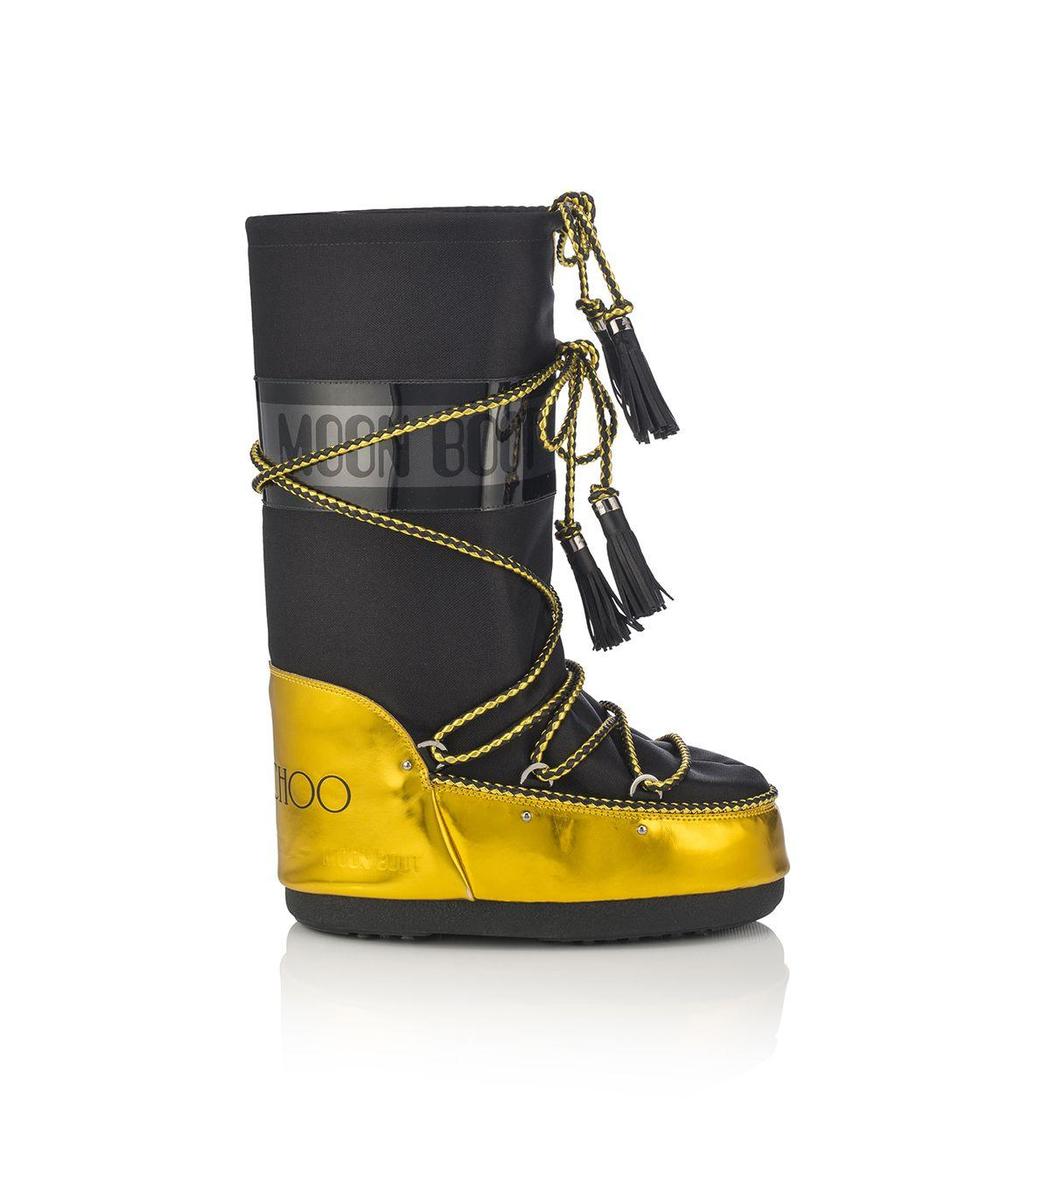 Jimmy Choo y Moon Boot, bota alta en negro y amarillo ácio